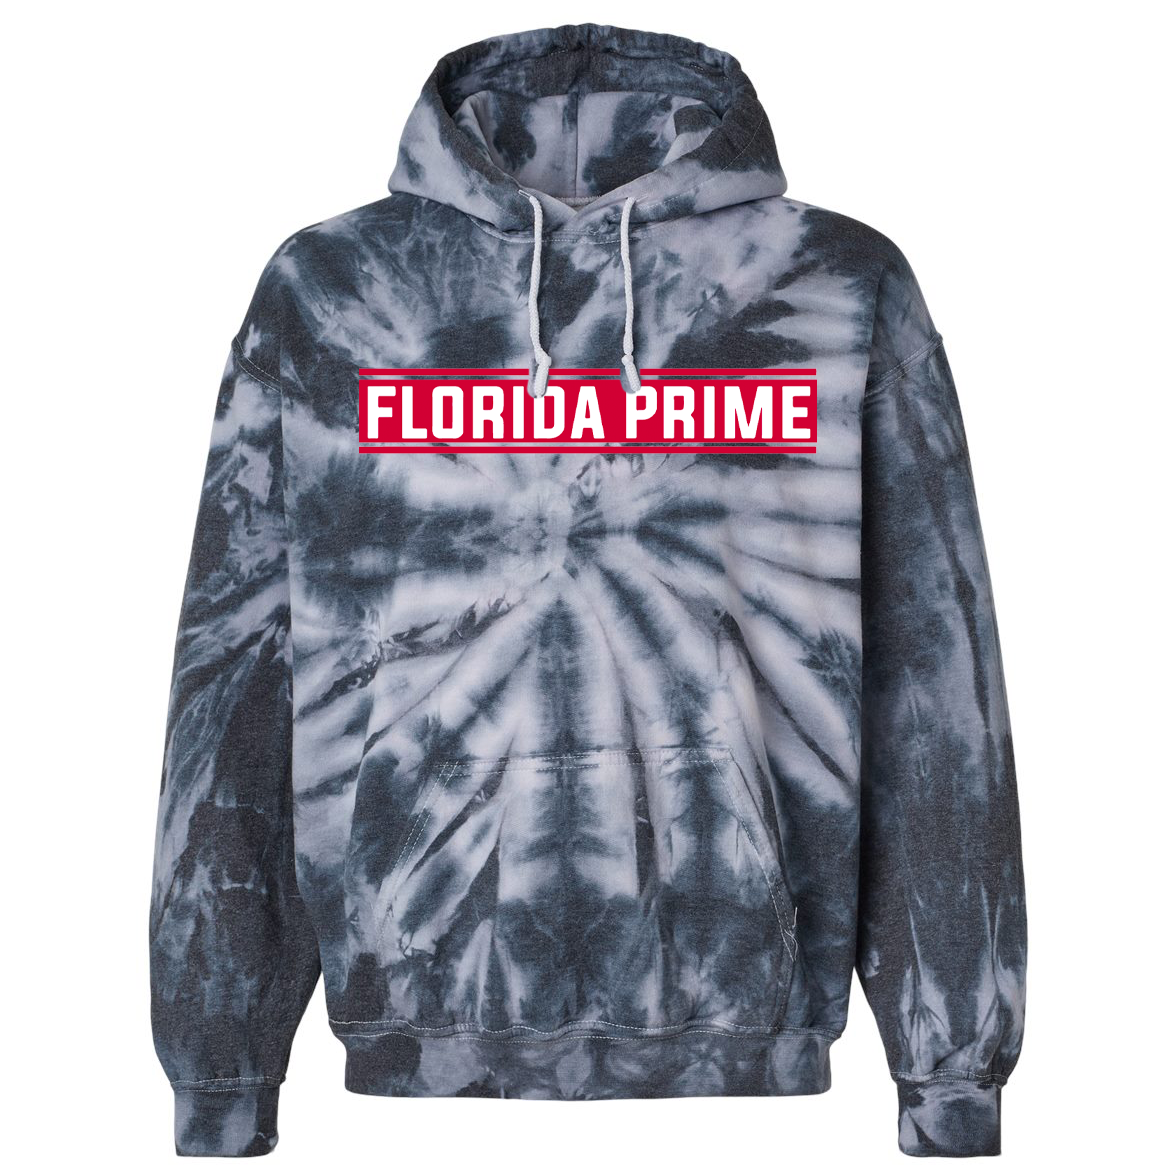 Florida Prime Lacrosse Blended Hooded Tie-Dyed Sweatshirt